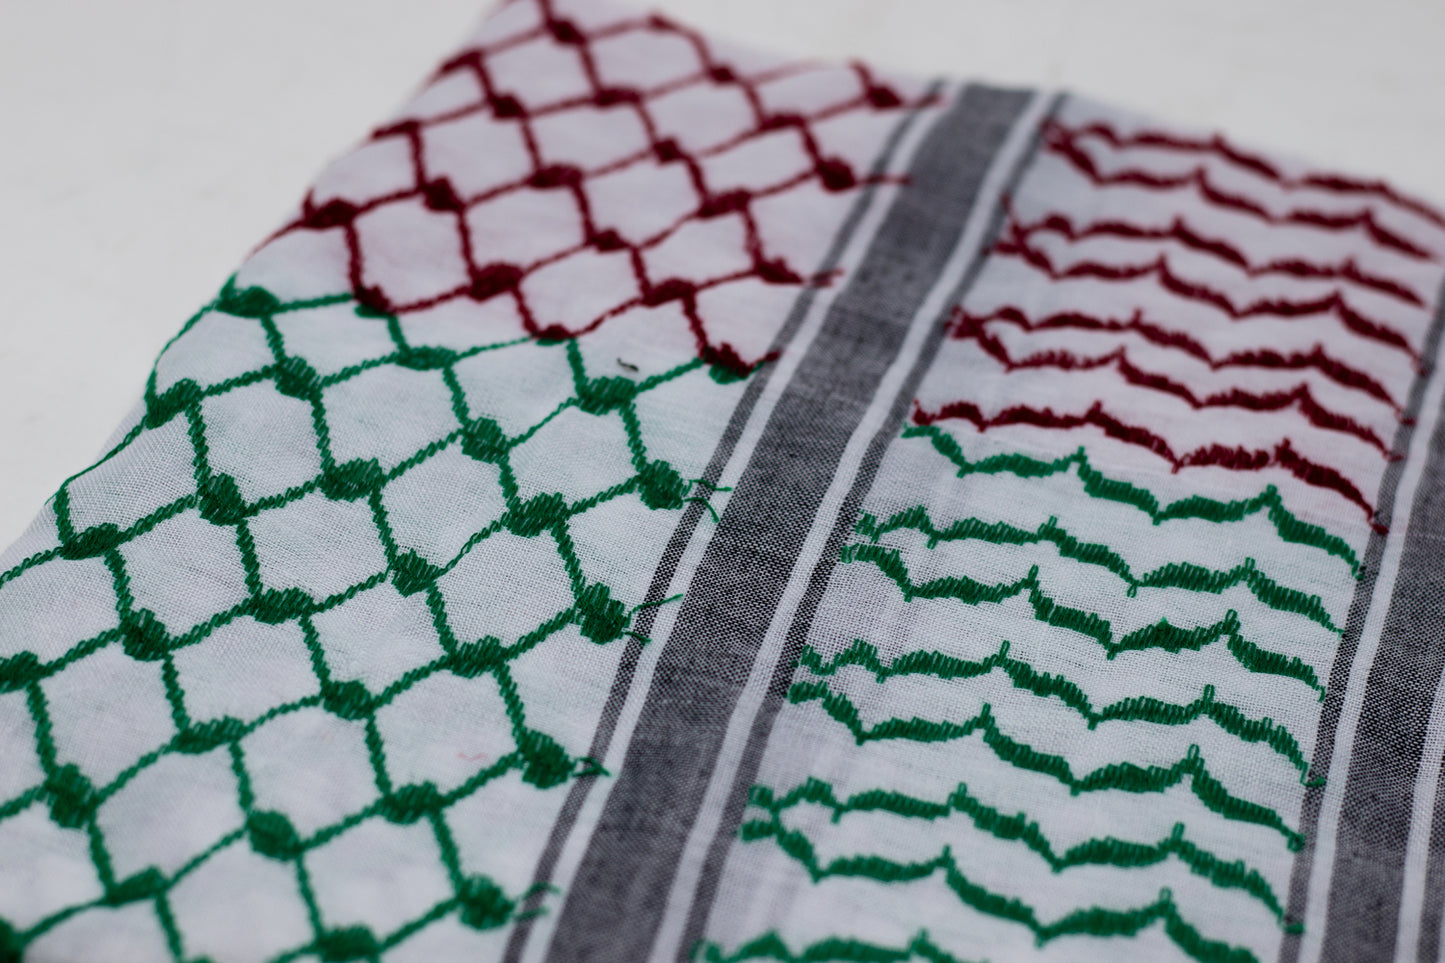 Palestine Flag Hirbawi Kufiya (Kuffiyeh)